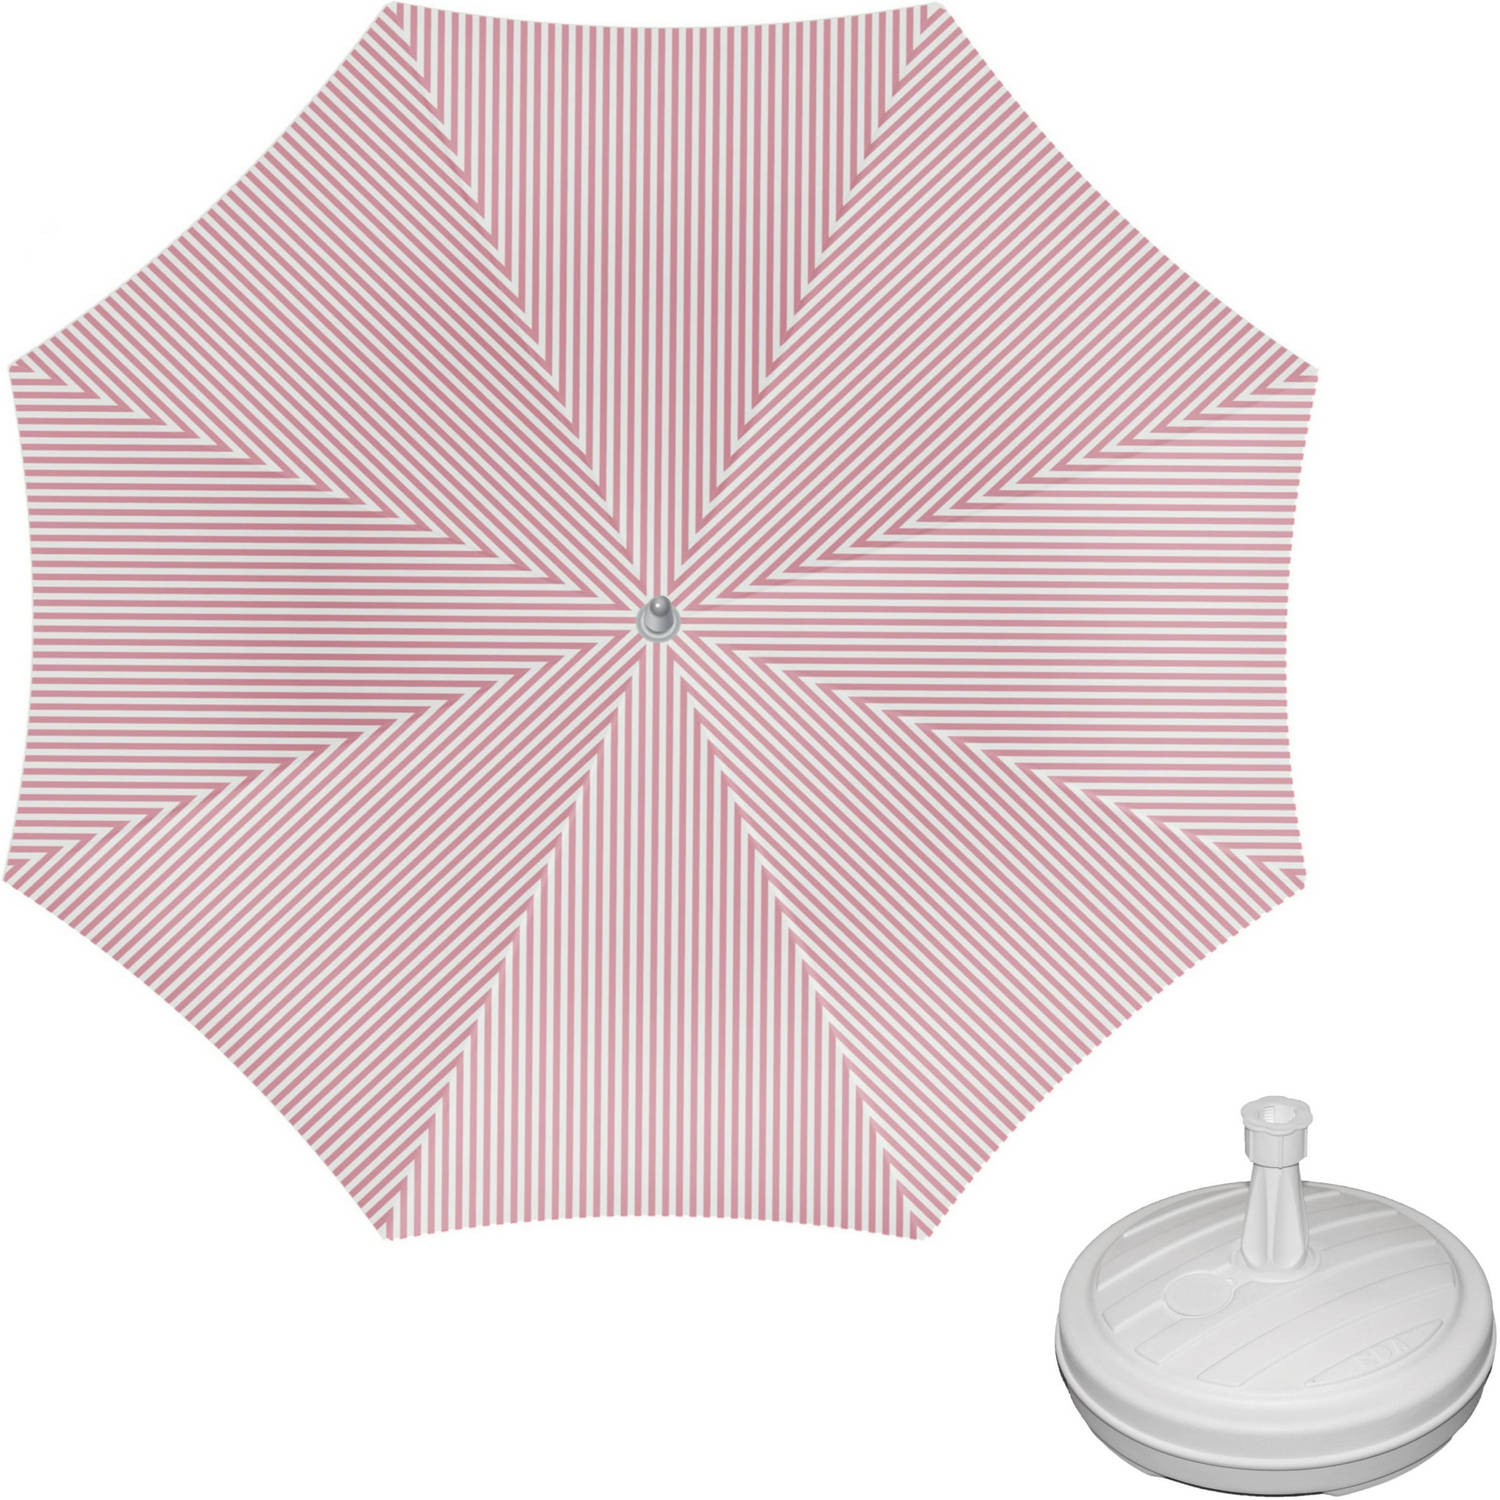 Parasol - Rood/wit - D160 cm - incl. draagtas - parasolvoet - 42 cm - Parasols